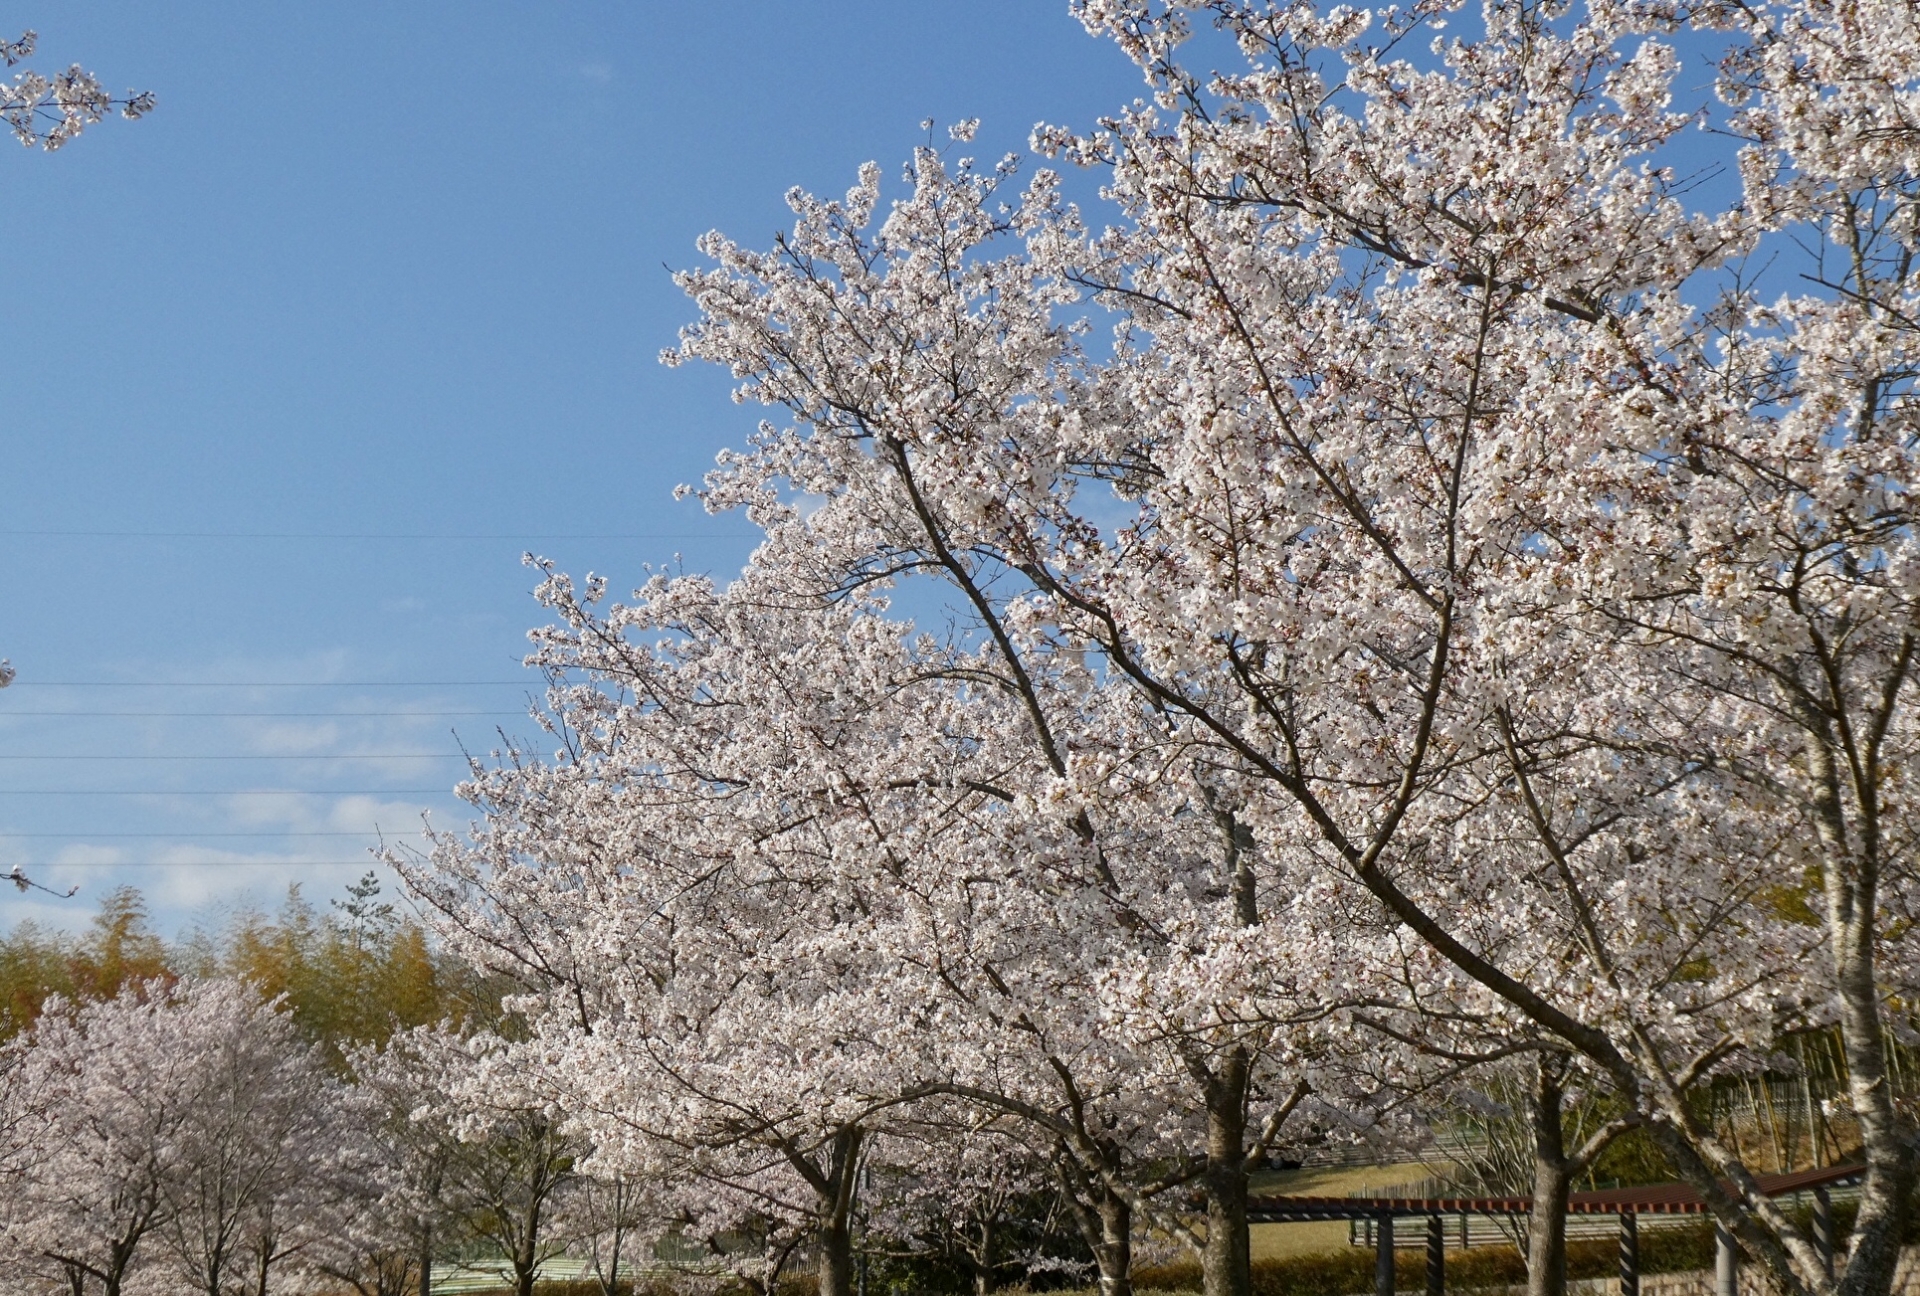 桜山公園の桜まつり21 開花状況や見どころなど紹介 情報発信ブログサイト Blue Rose